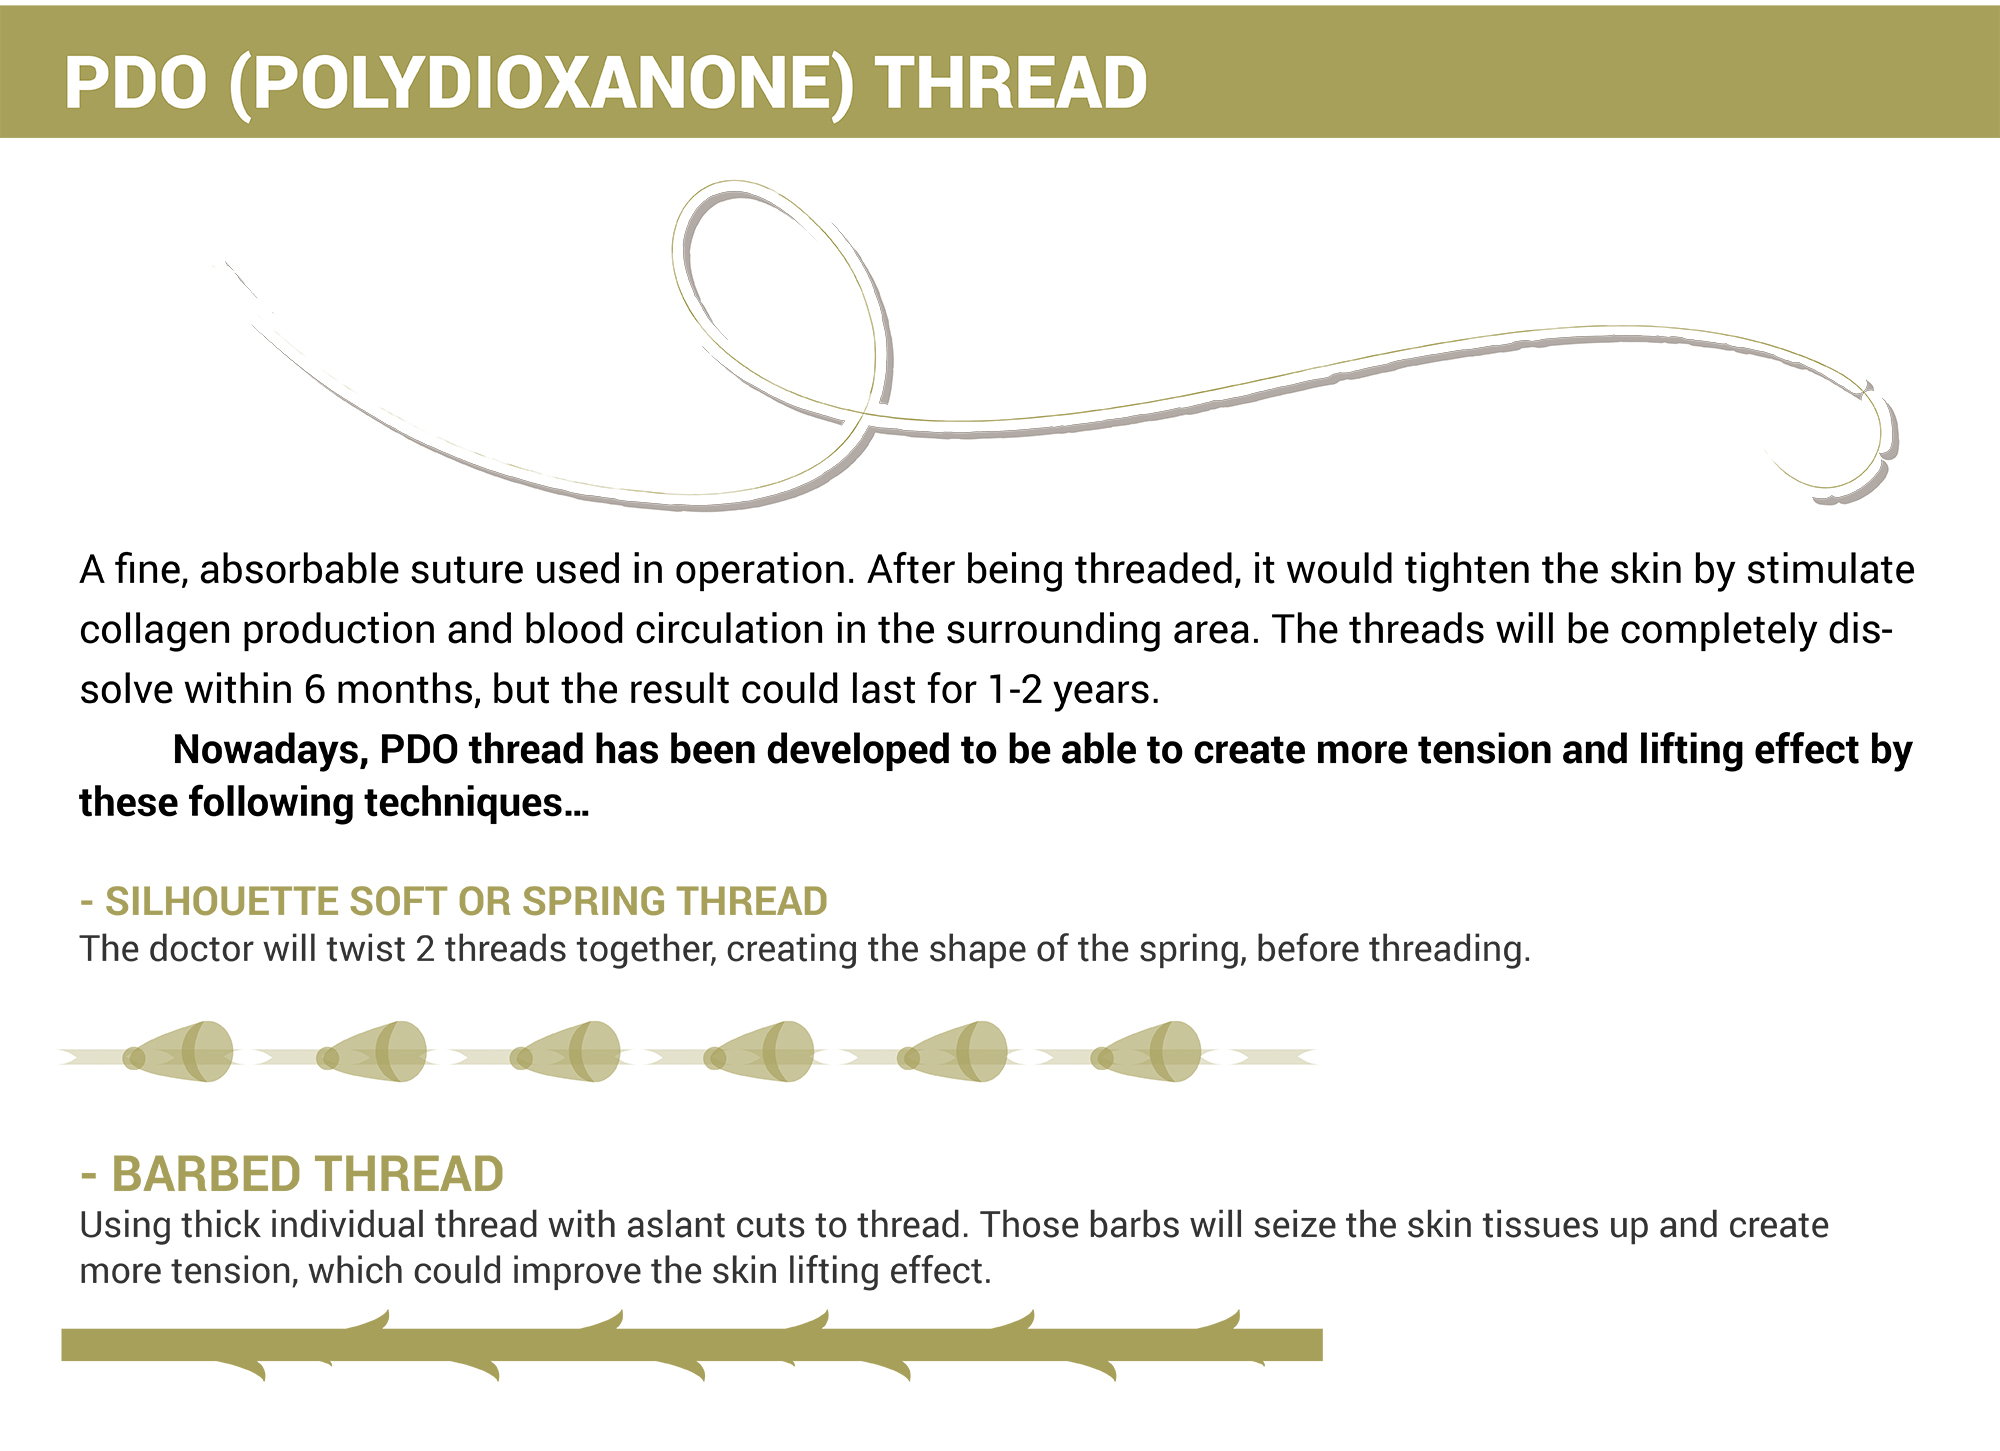 Polydioxanone Thread (PDO)